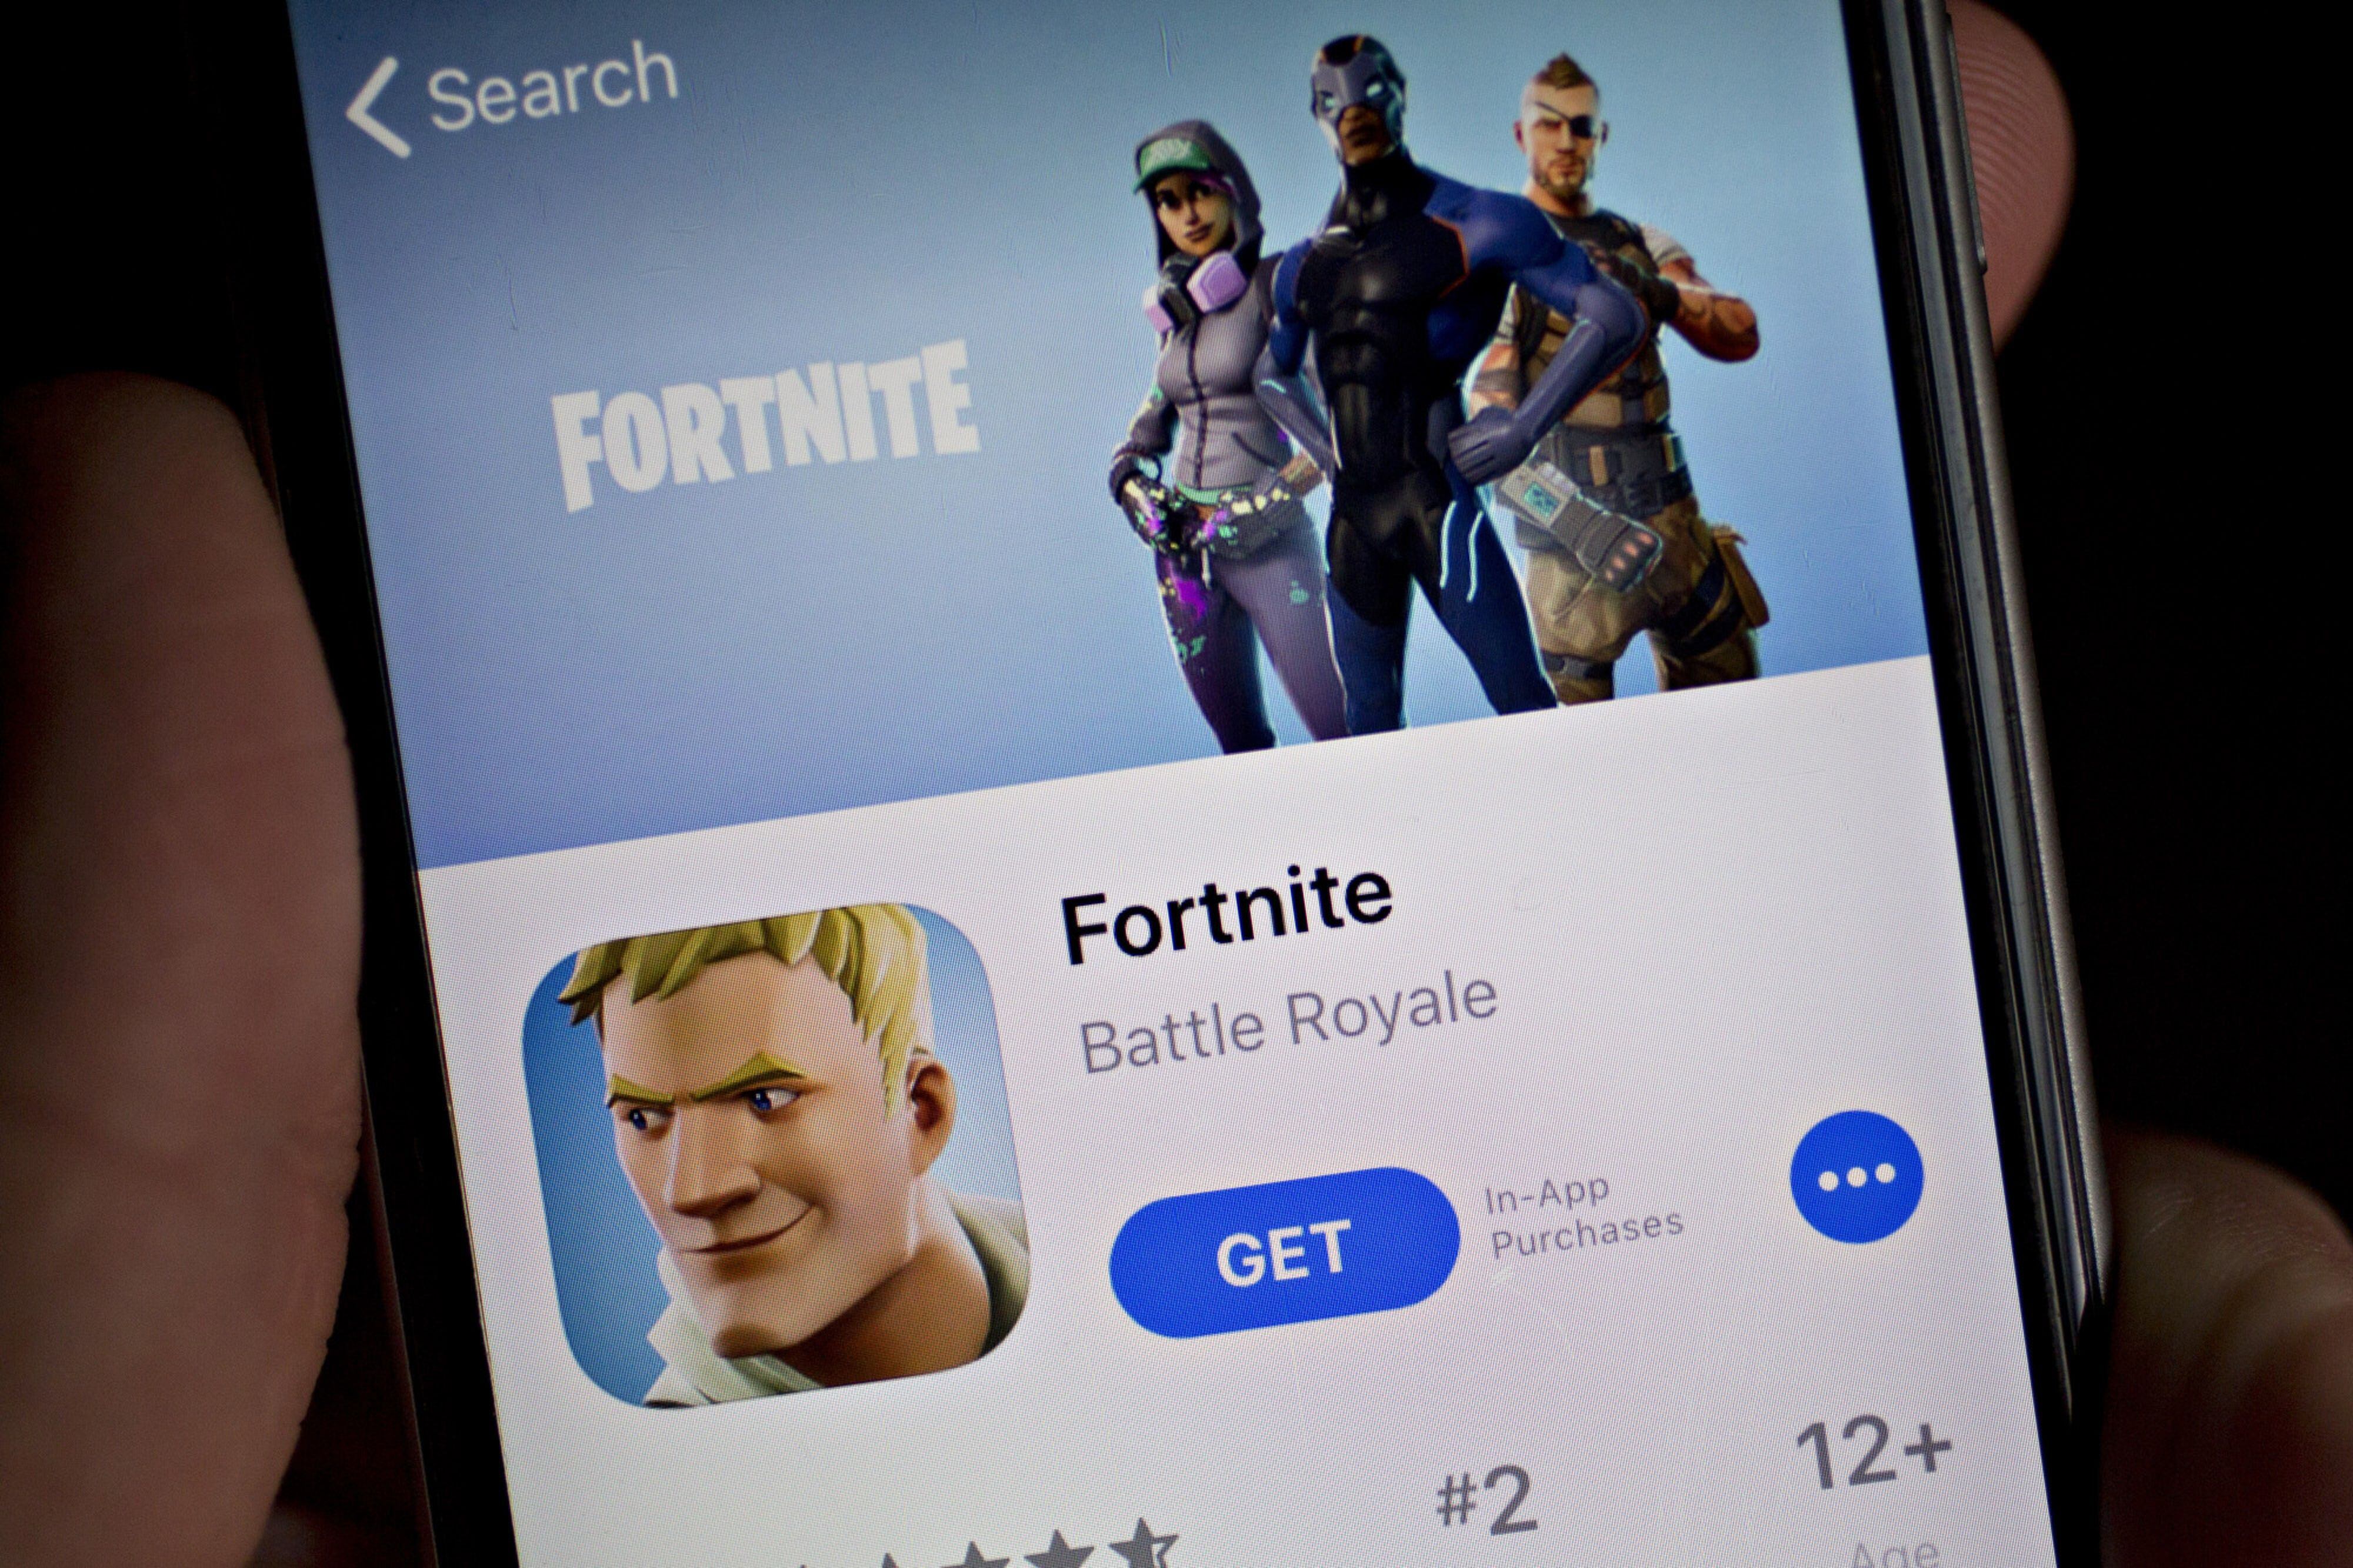 Google entra na Justiça contra Epic Games por conta de 'Fortnite